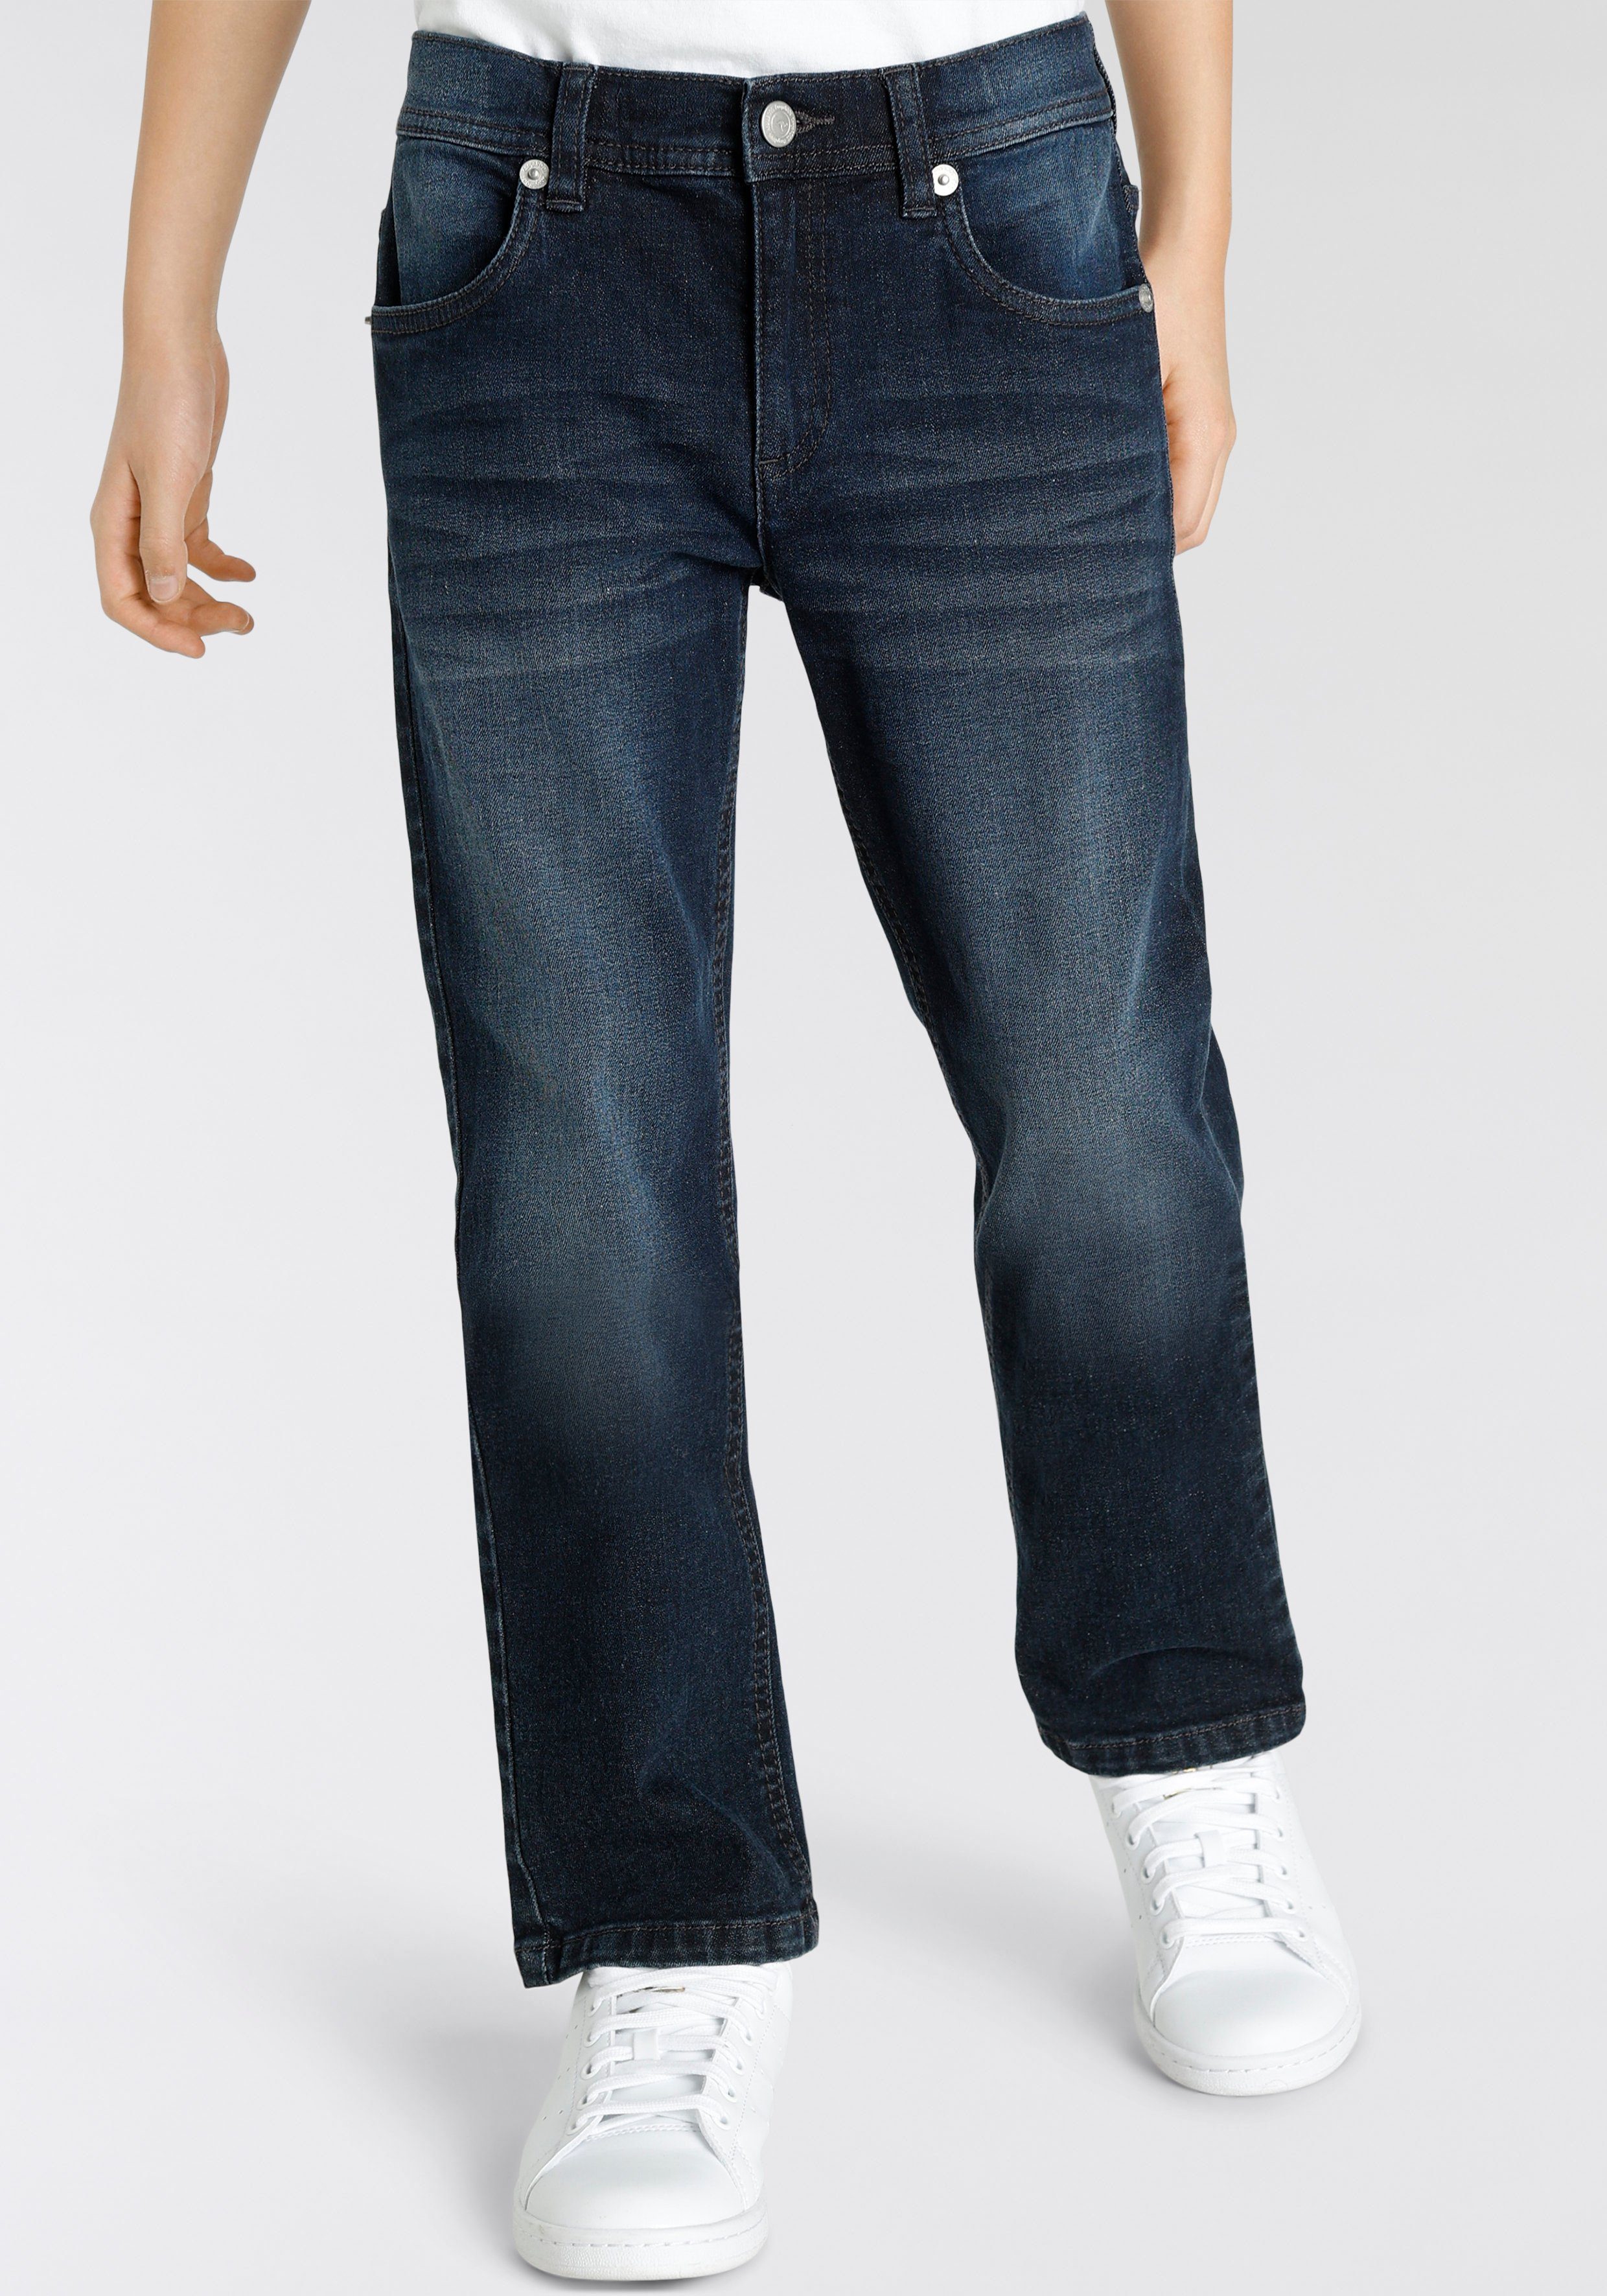 KangaROOS Stretch-Jeans, regular fit mit geradem Beinverlauf | Stretchjeans